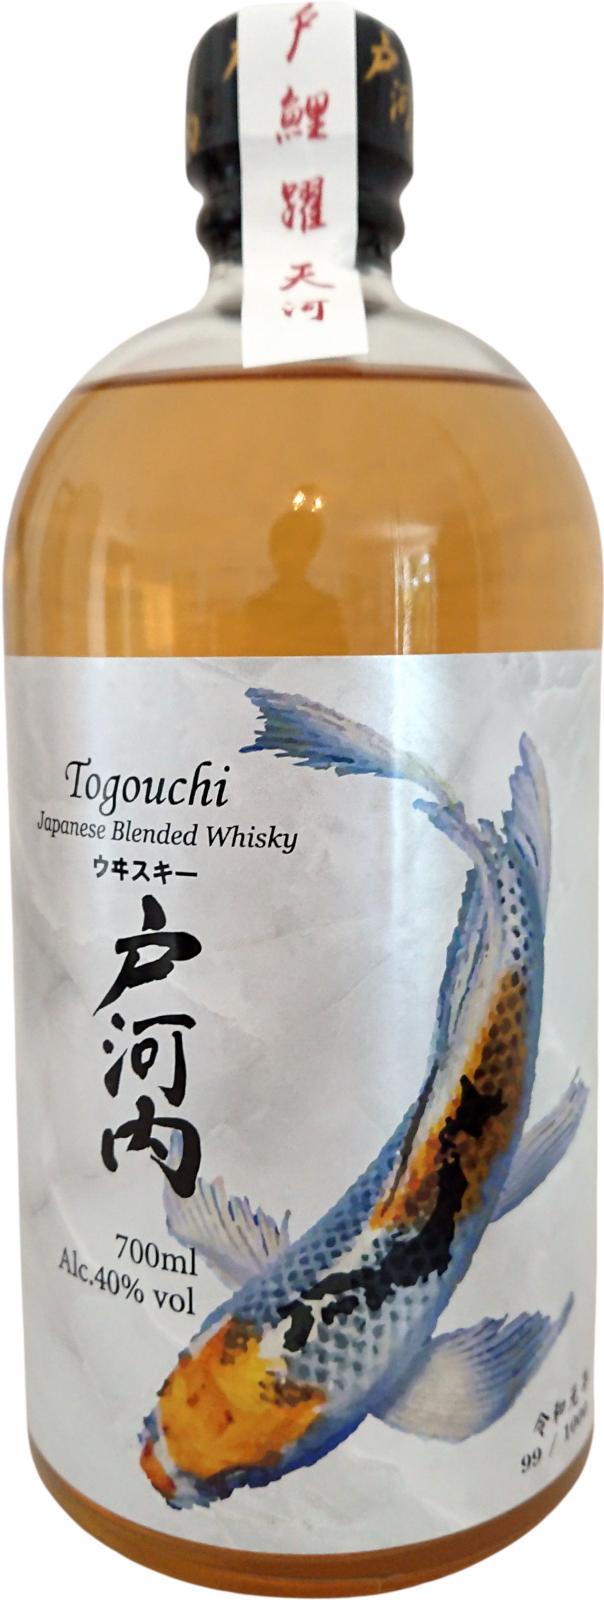 Togouchi Japanese Blended Whisky 40% 700ml